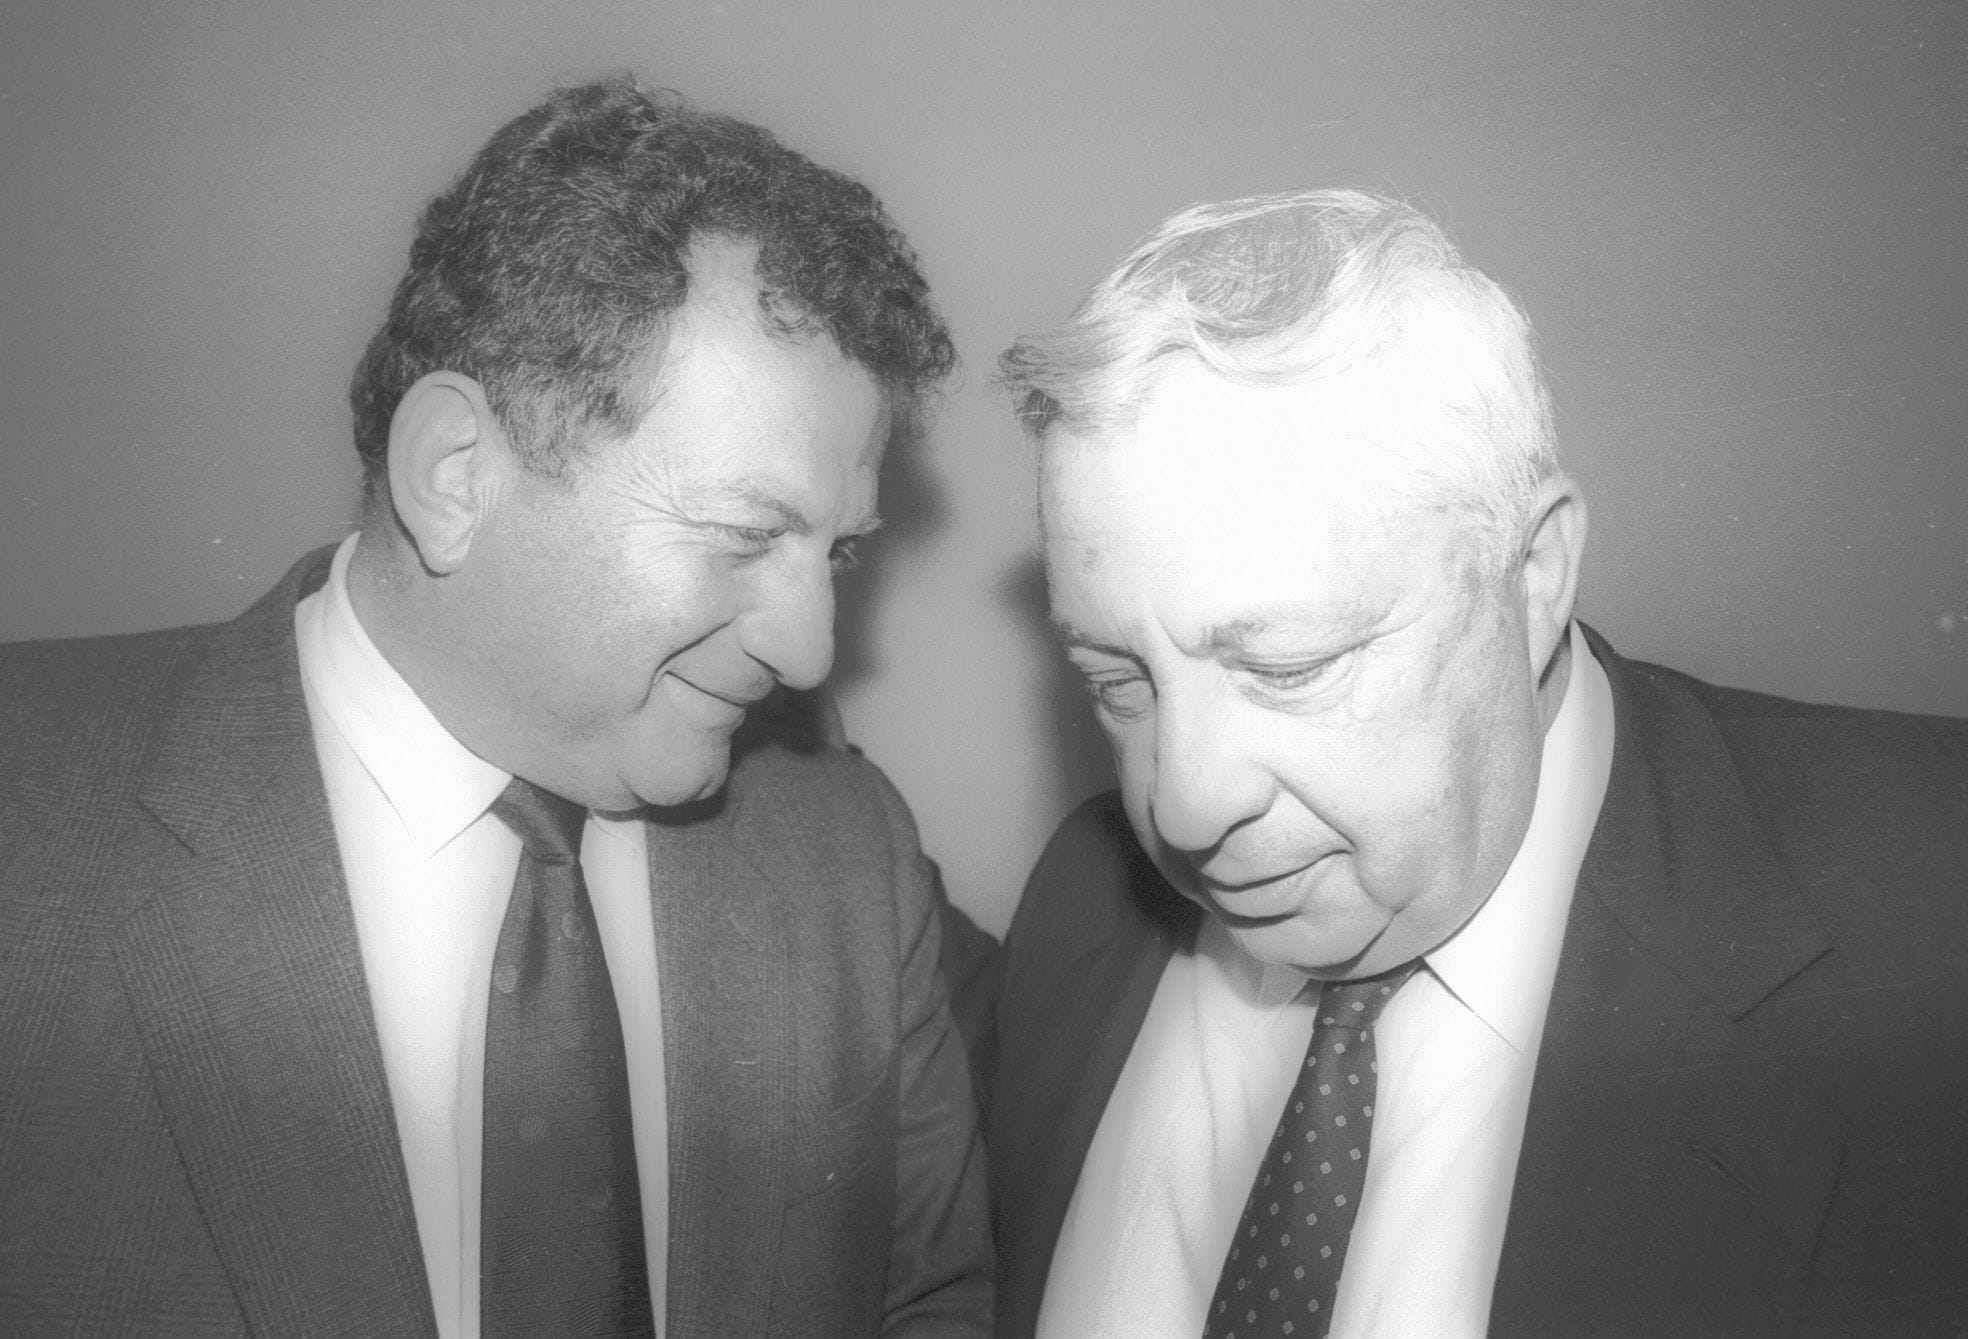 אלי לנדאו ואריק שרון בשנות השמונים (צילום: שאול רחמים, IPPA, אוסף דן הדני, הספרייה הלאומית)